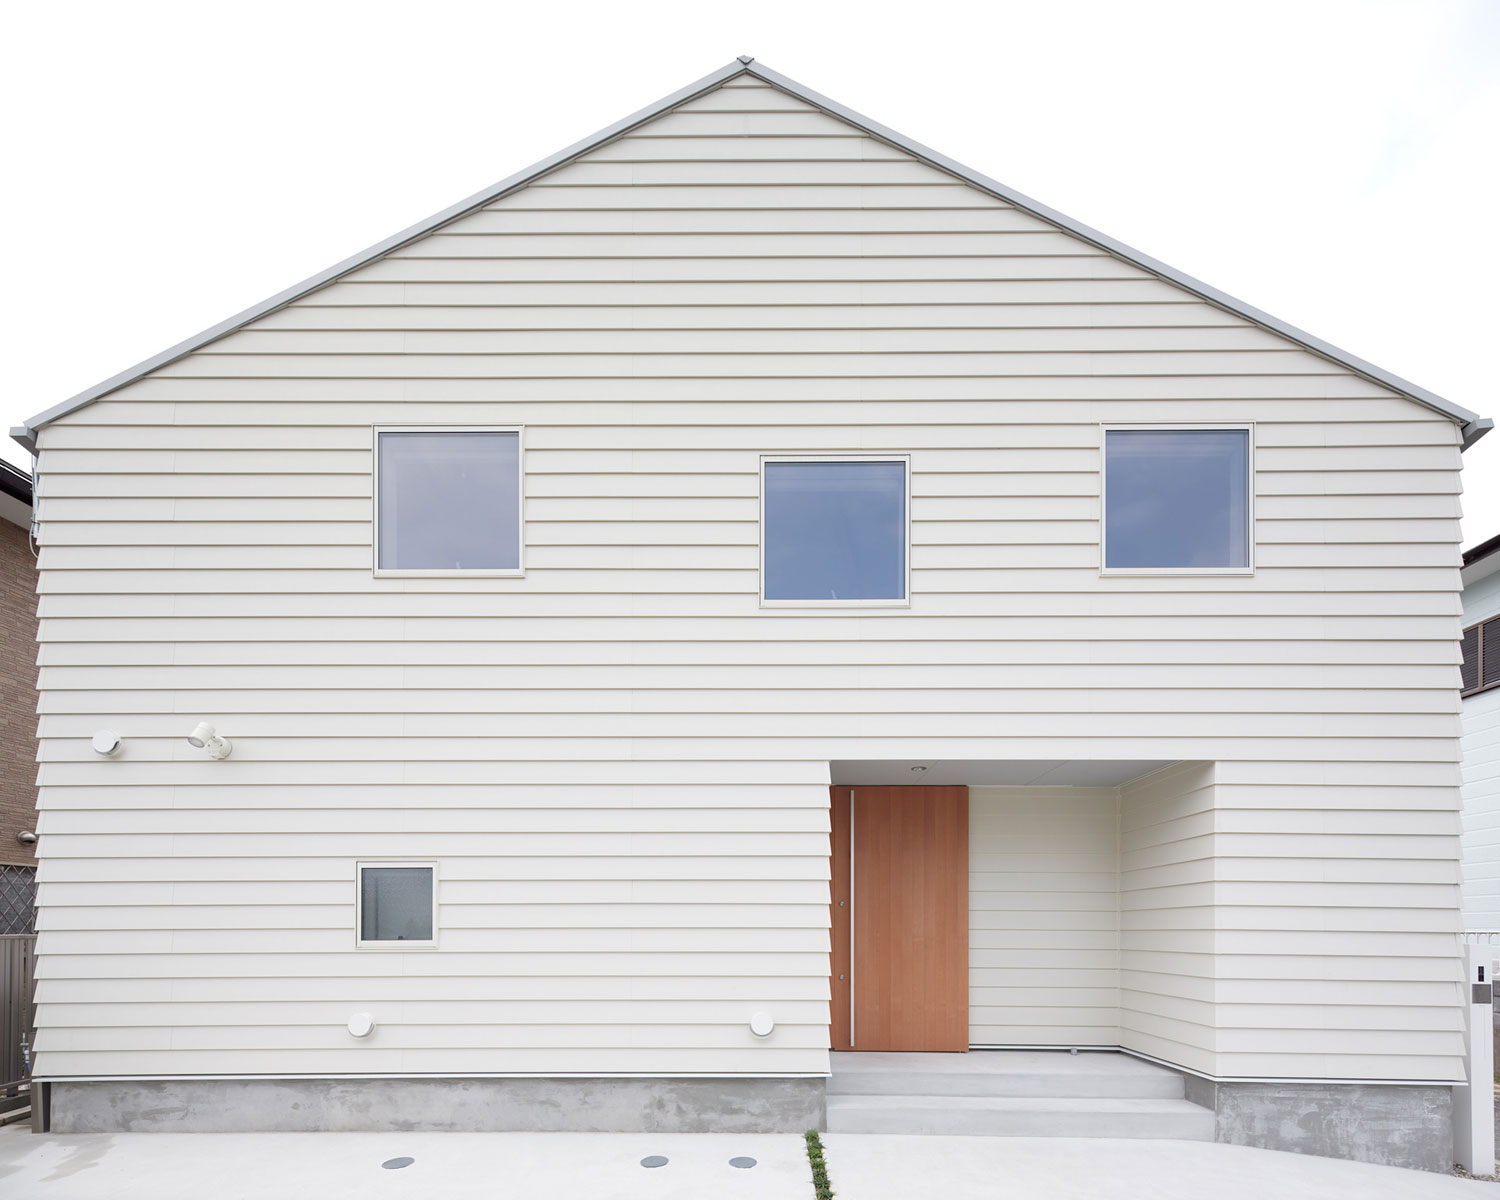 三角屋根になっている白い壁の住宅・フリーダムアーキテクツの事例